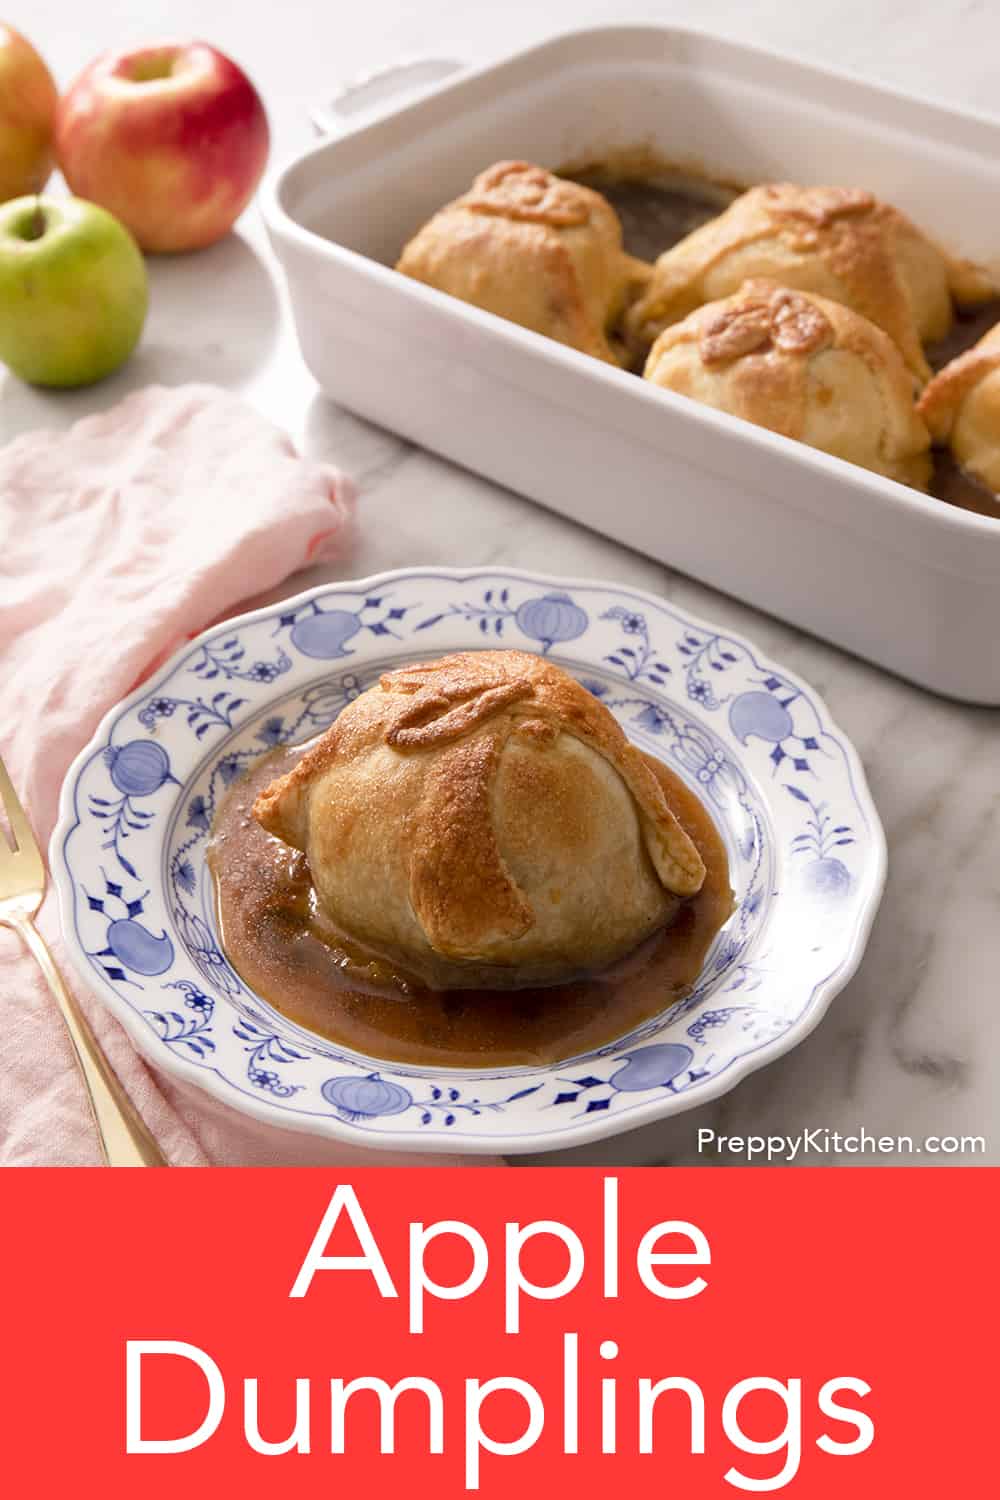 Apple Dumplings - Preppy Kitchen